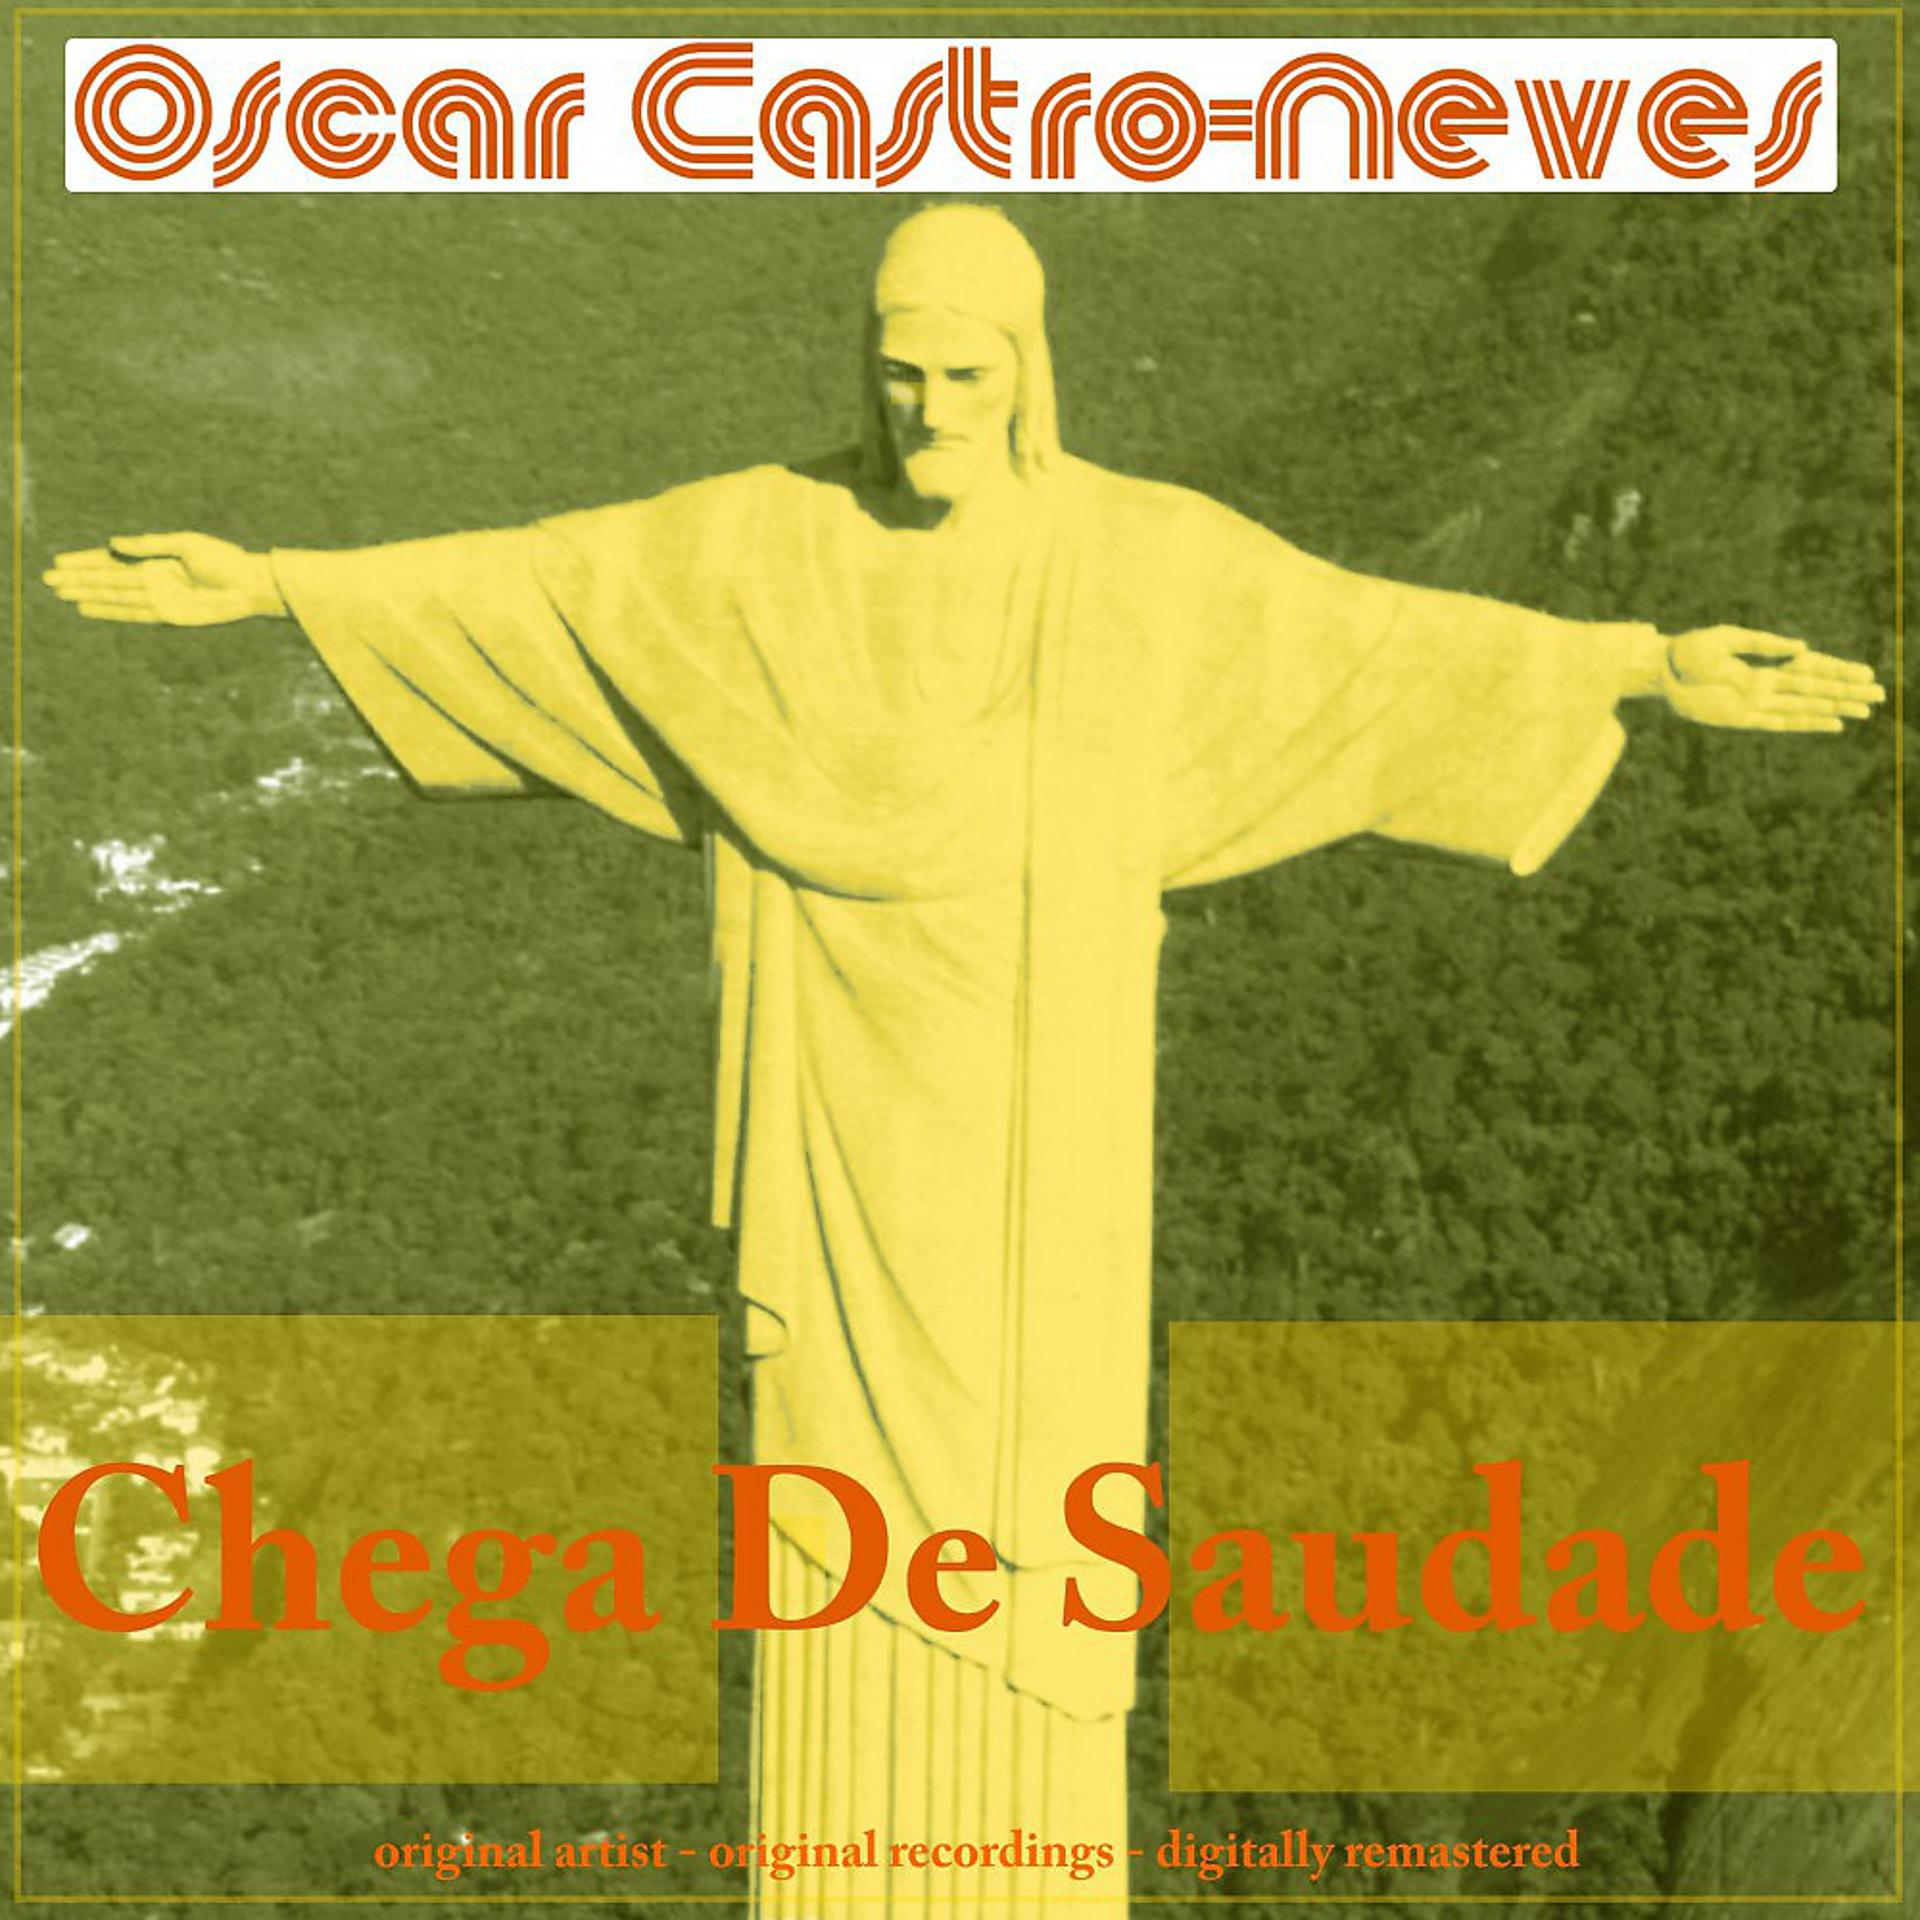 Постер альбома Chega de Saudade